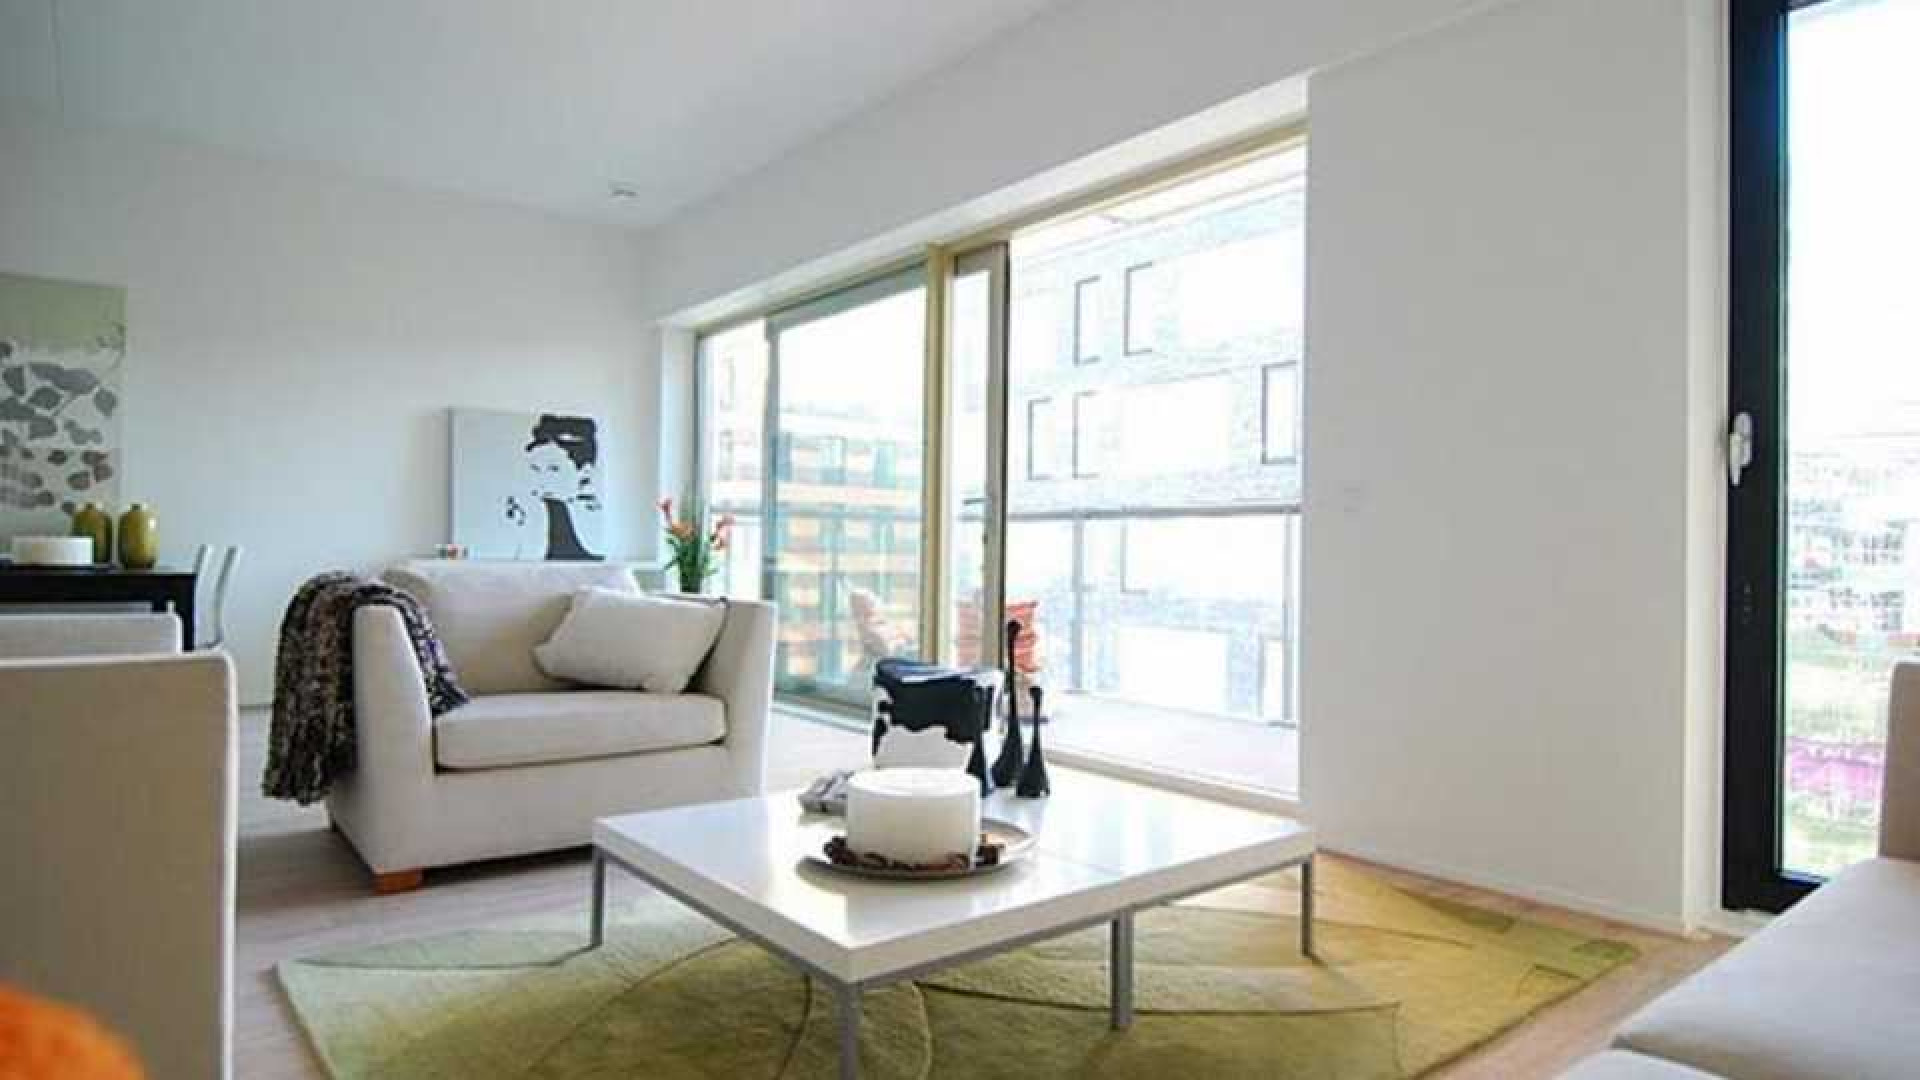 Ajax voetballer Joel Veltman huurt zeer luxe appartement aan de Zuid As in Amsterdam. Zie foto's 5